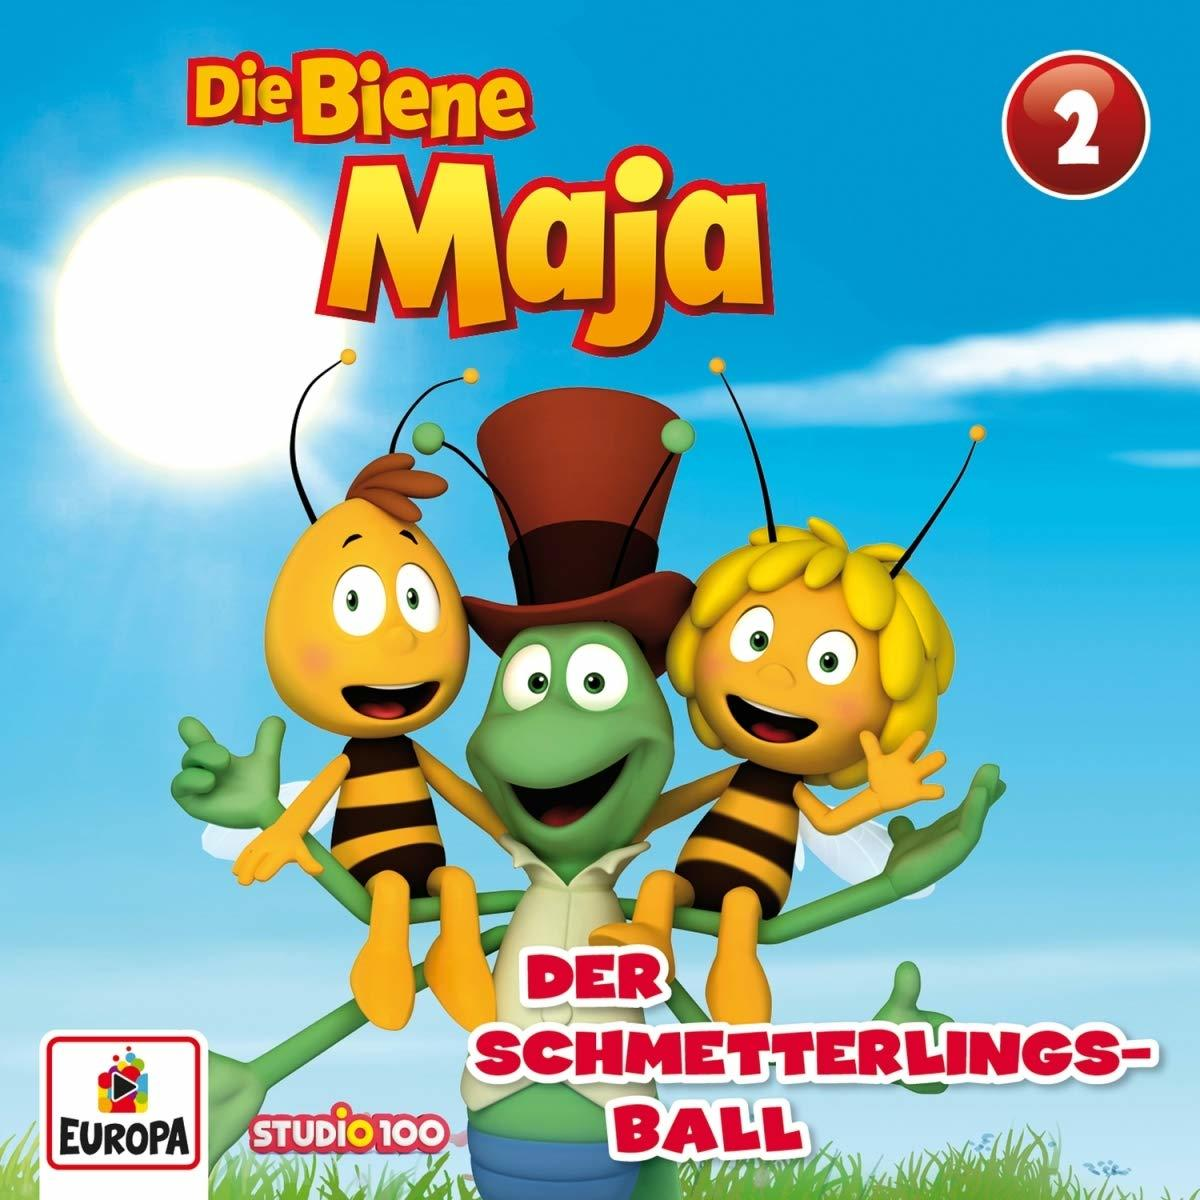 - Biene (CGI) 02/Der (CD) Schmetterlingsball - Maja